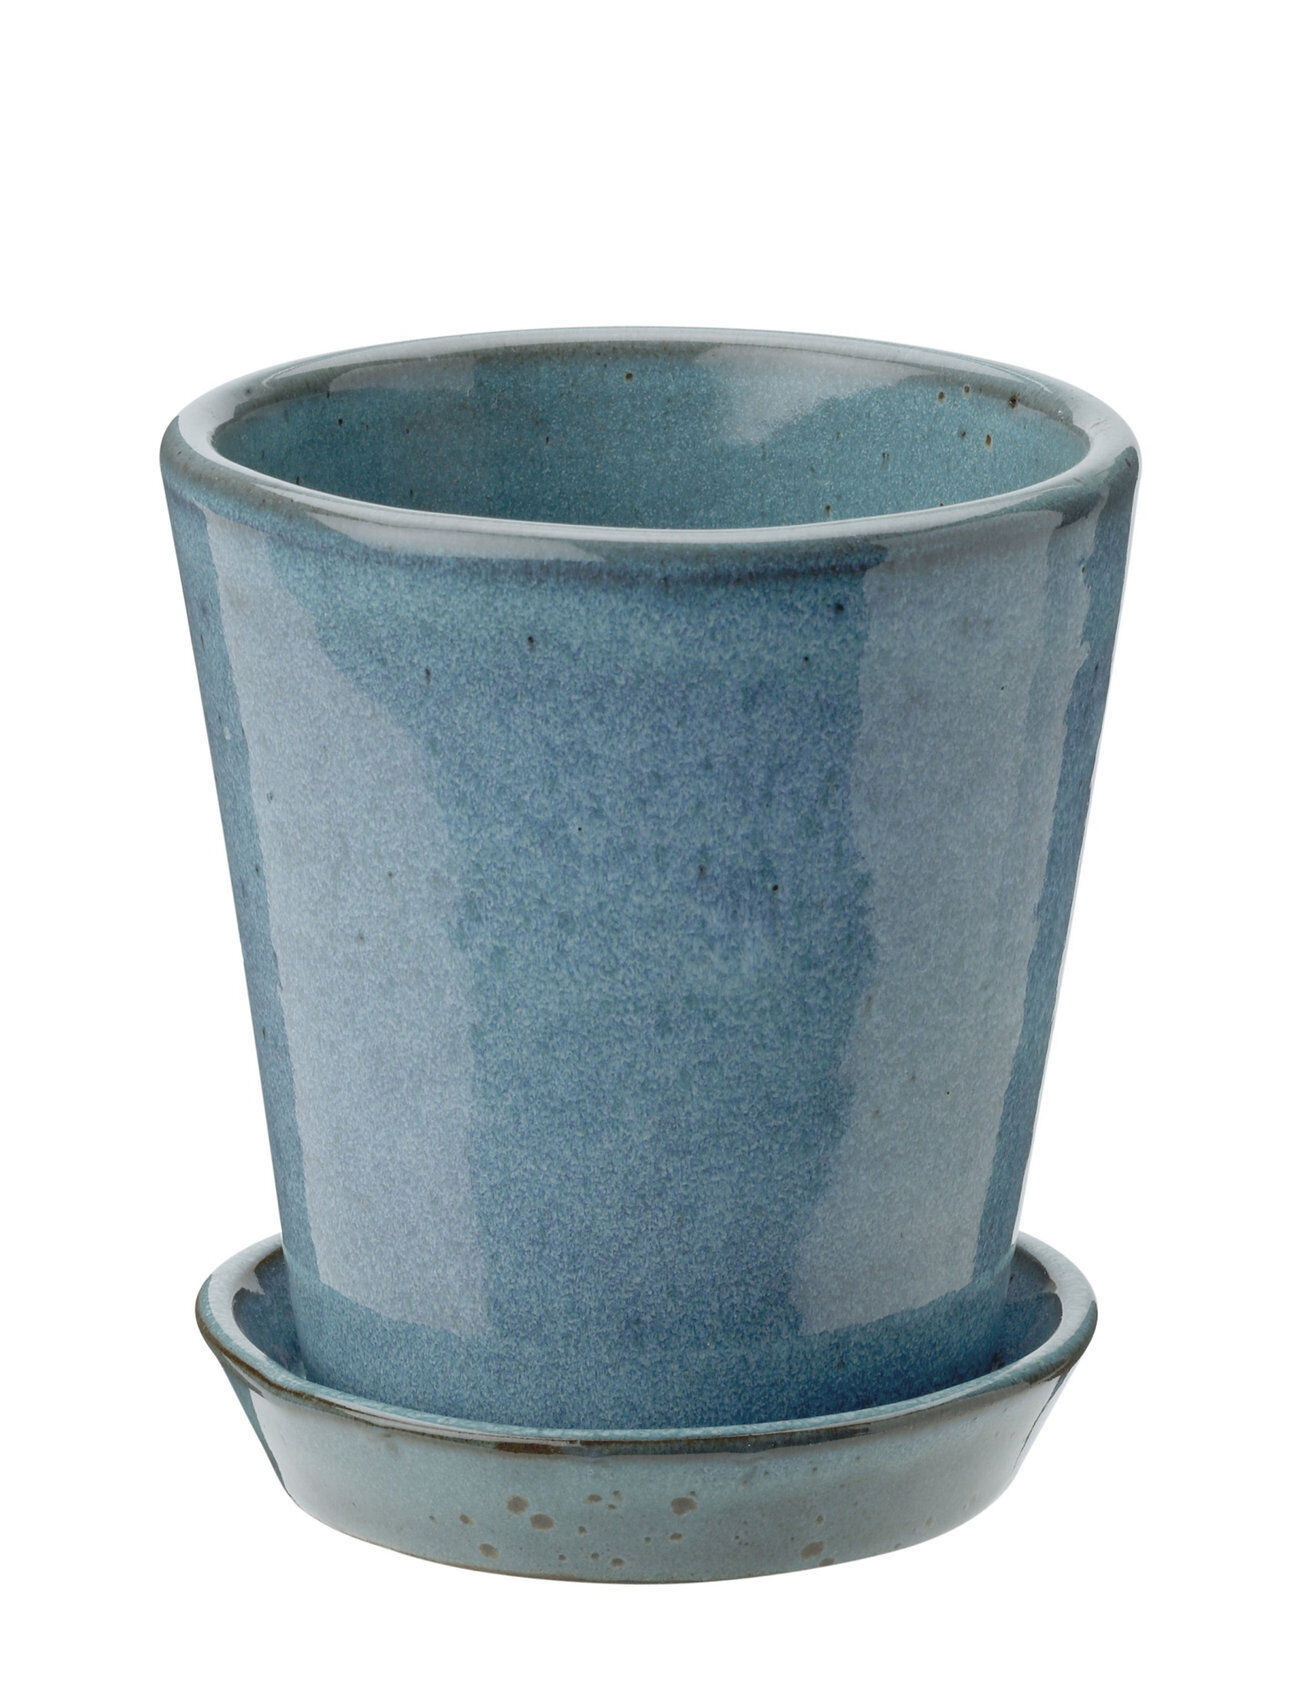 Knabstrup Keramik Krukke Med Fat Home Decoration Flower Pots Blå Knabstrup Keramik